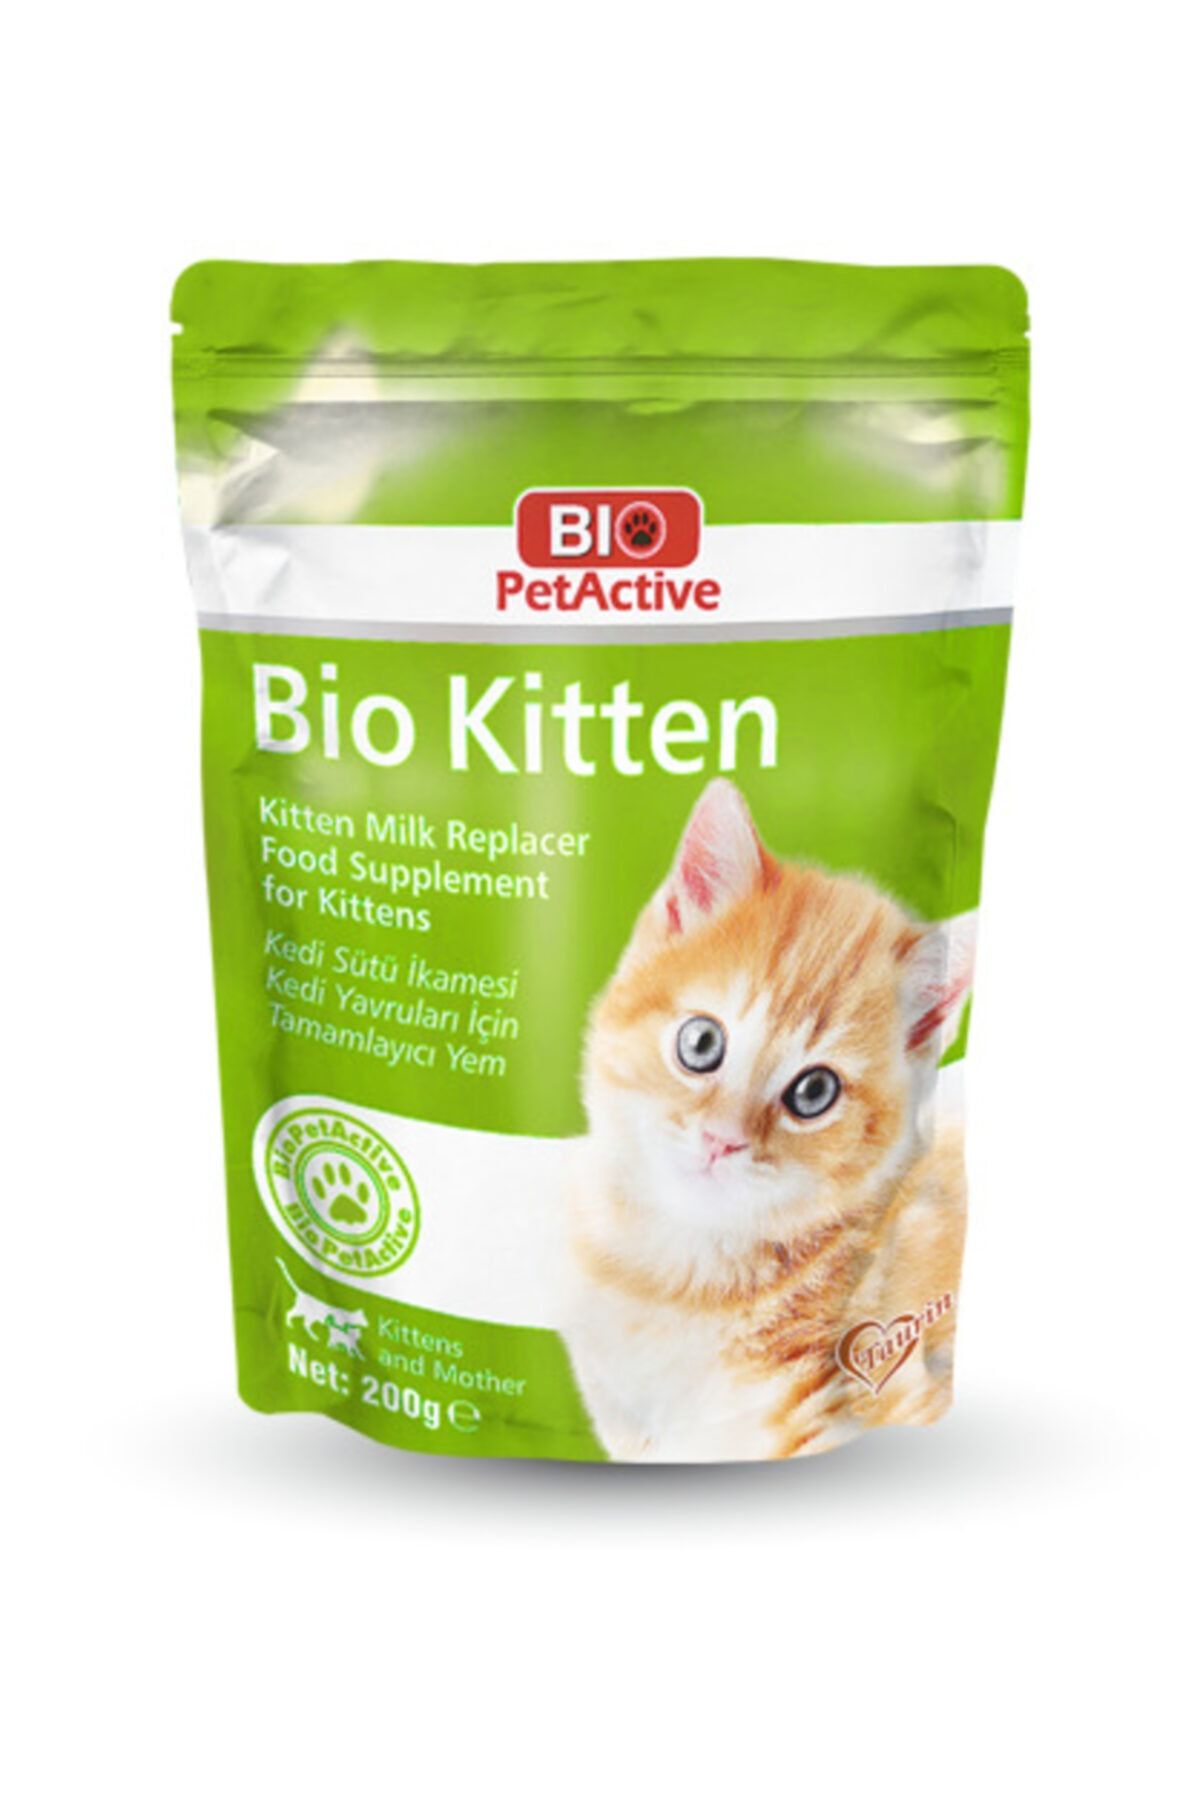 Bio PetActive Bio Kitten Milk Powder | Kedi Sütü Ikamesi Kedi Yavruları Için Tamamlayıcı Yem 200 G.